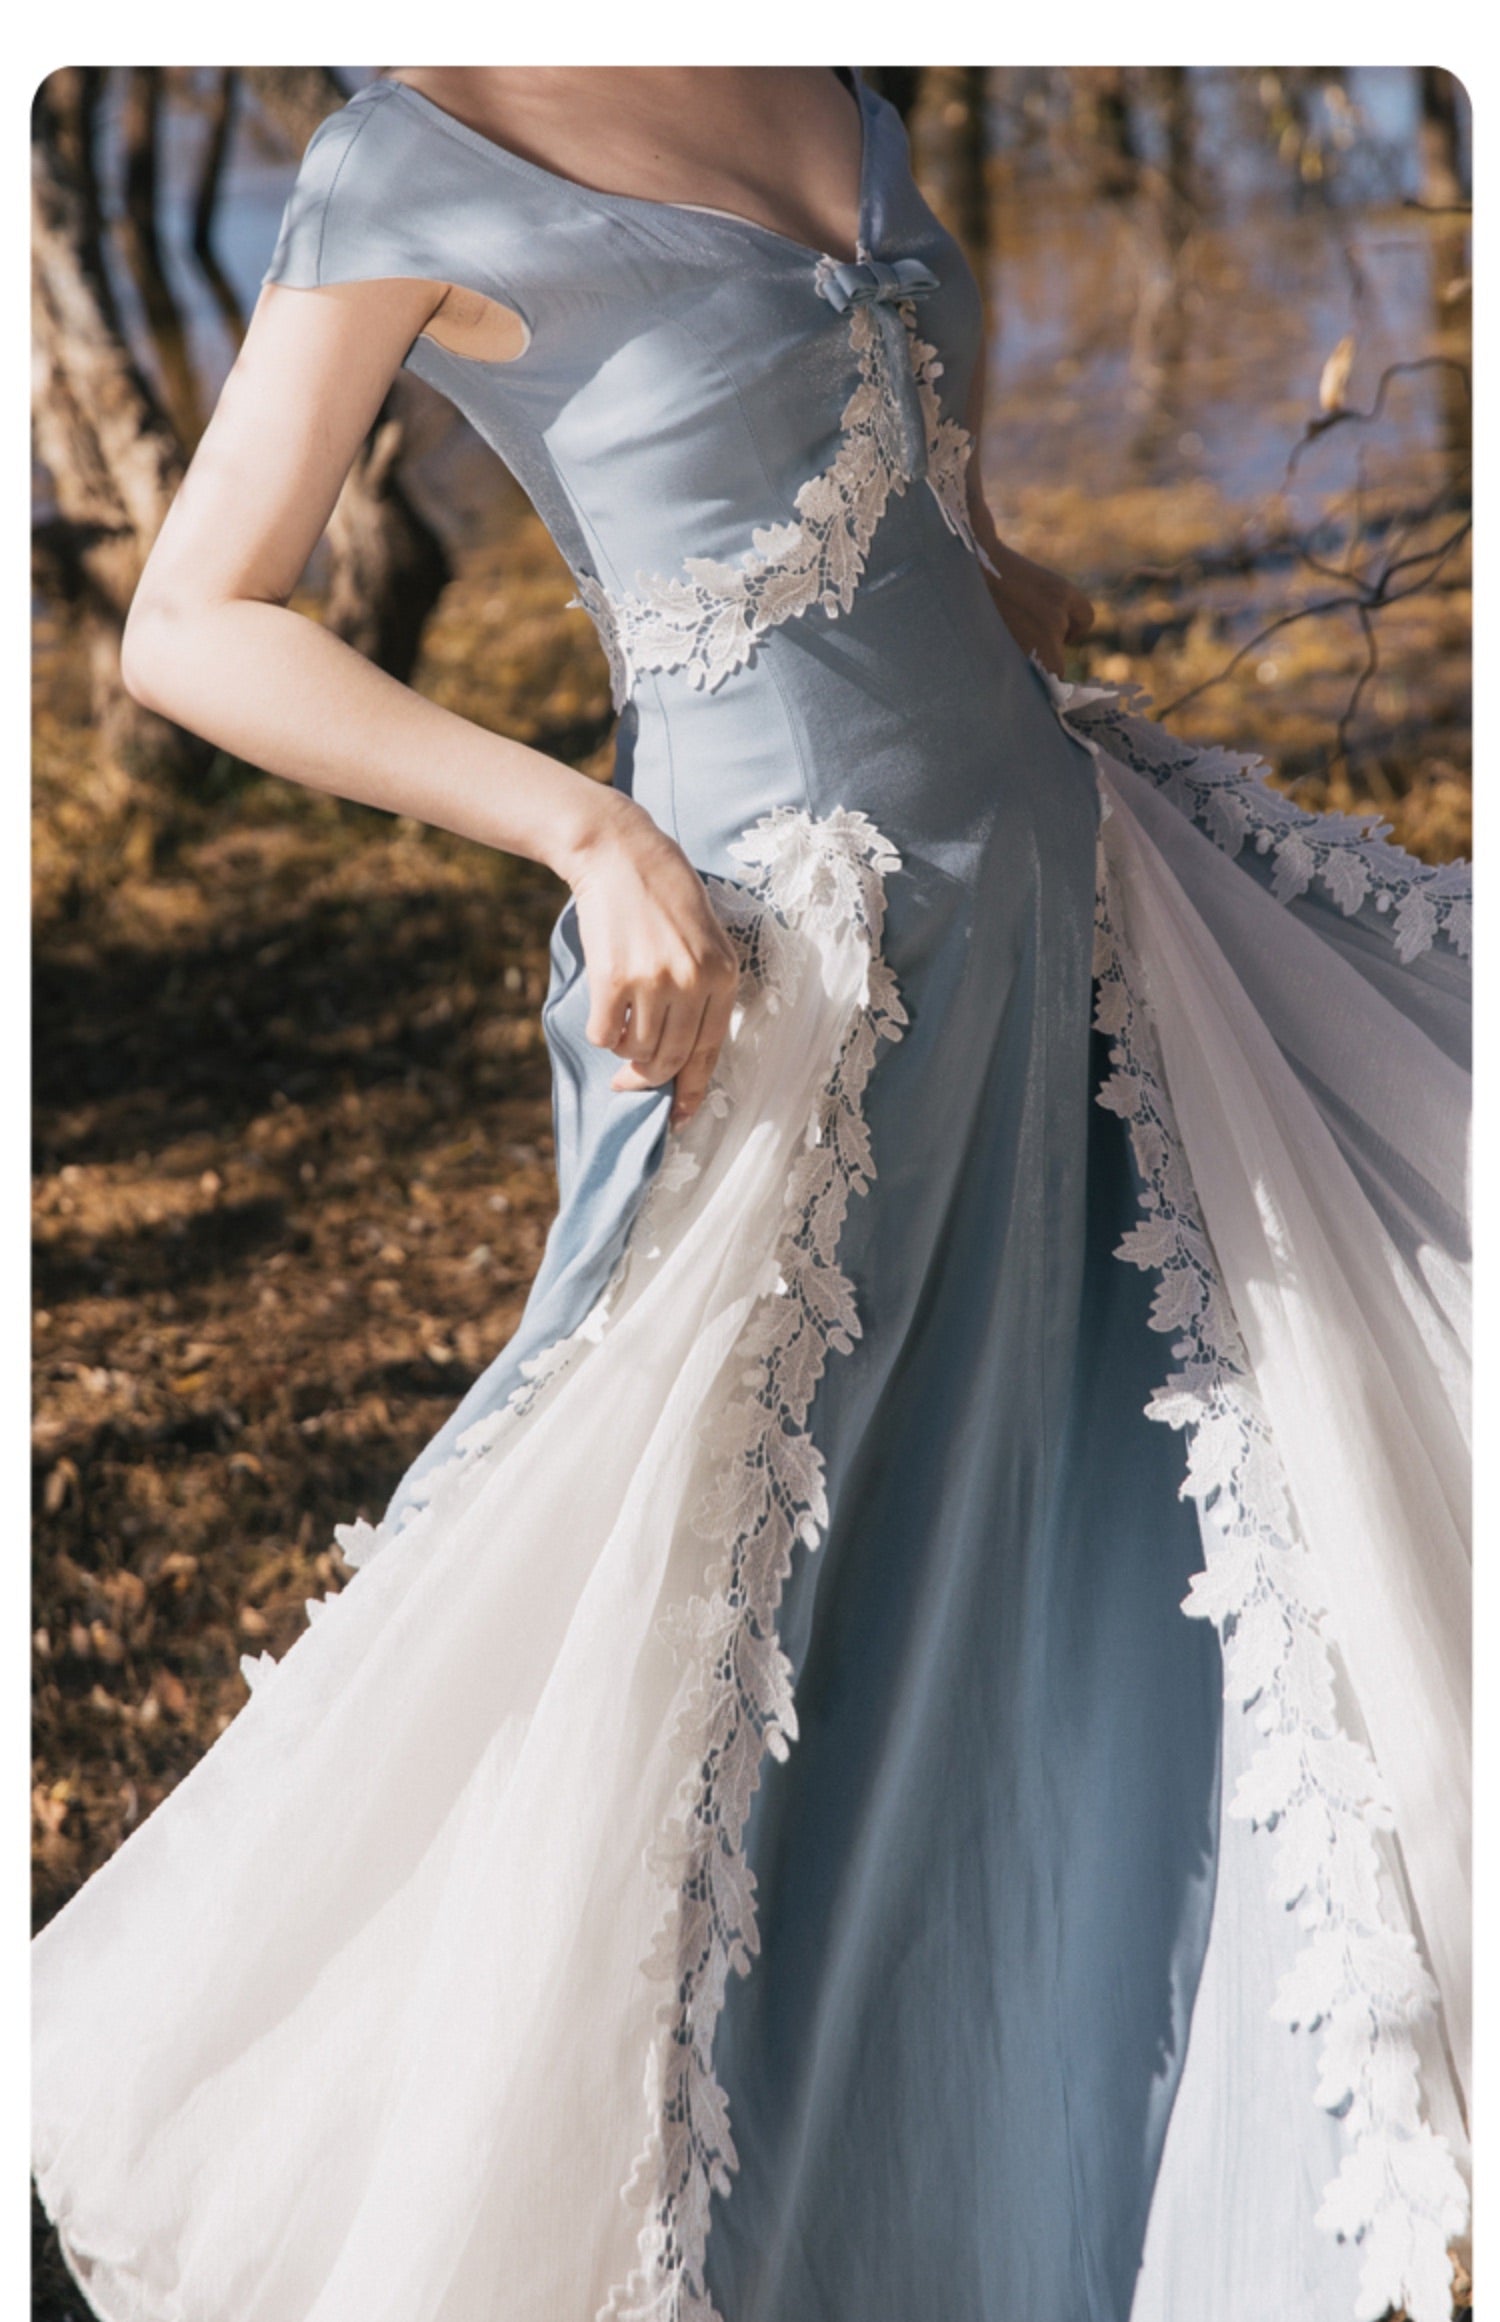 Orella Romantic Royalcore Dress 